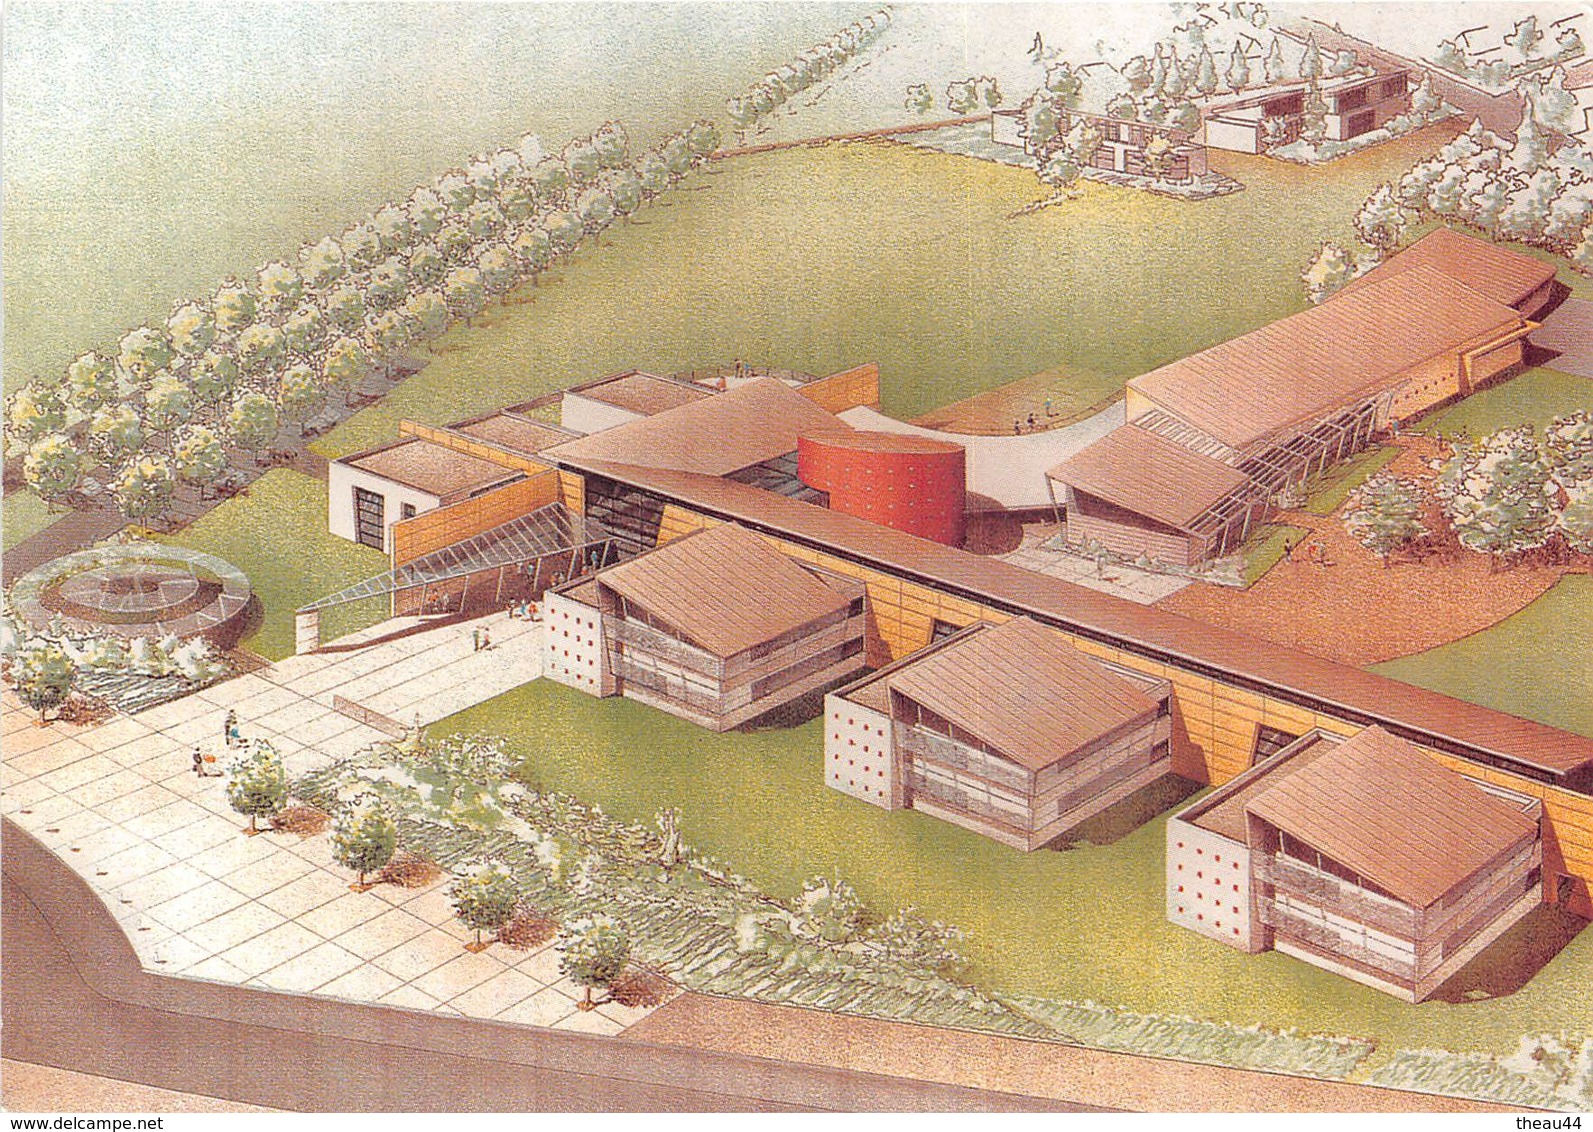 ¤¤   -  BOUAYE   -   Le Lycée Public   -  Projet De L'Atelier D'Architecture  -  Ouvert En 1997   -   ¤¤ - Bouaye